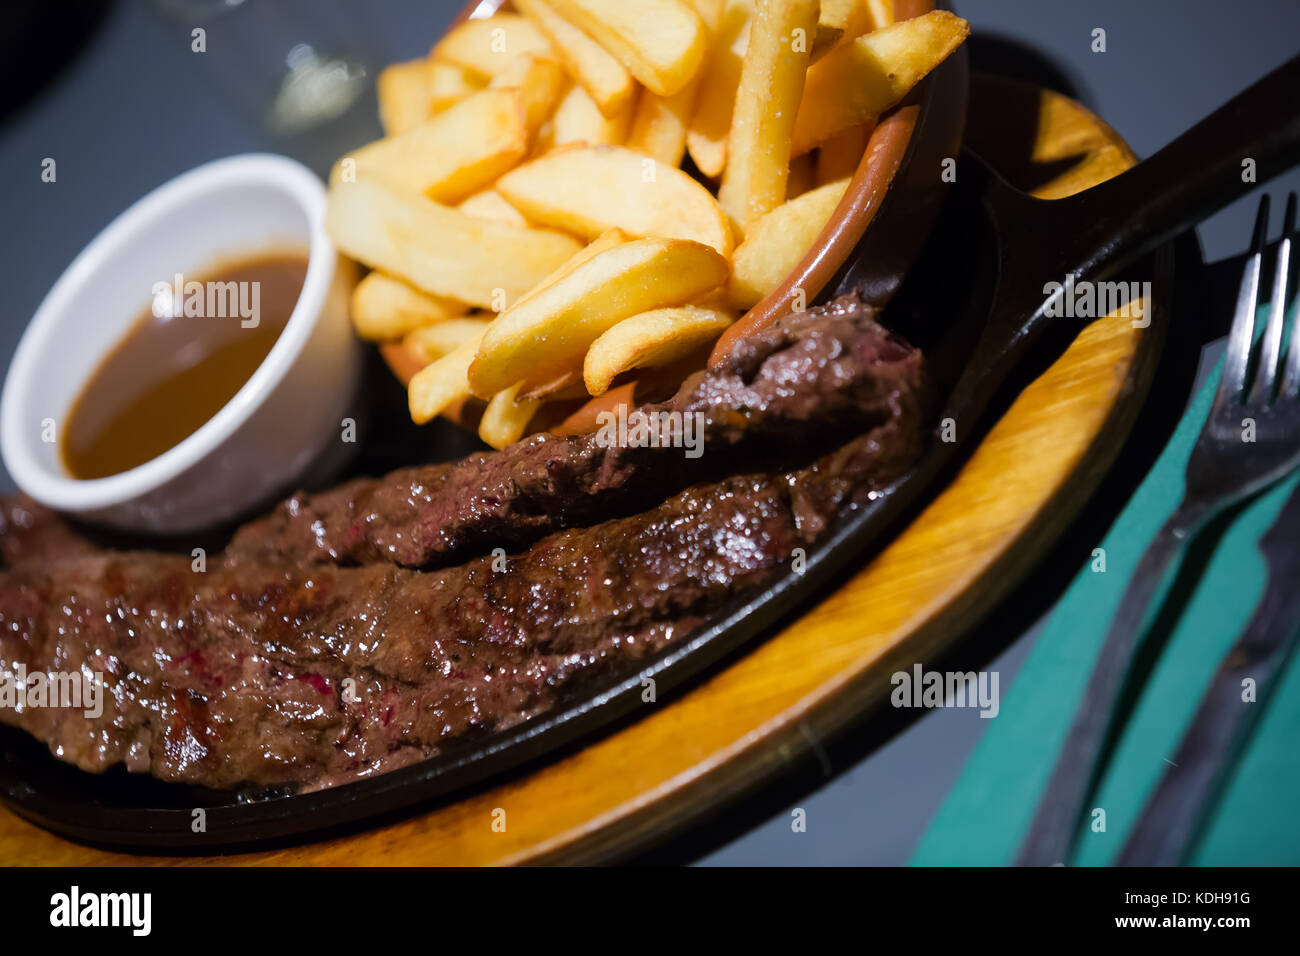 Hot Spanisch carne en Adobo - Fleisch mit Bratkartoffeln serviert  Stockfotografie - Alamy